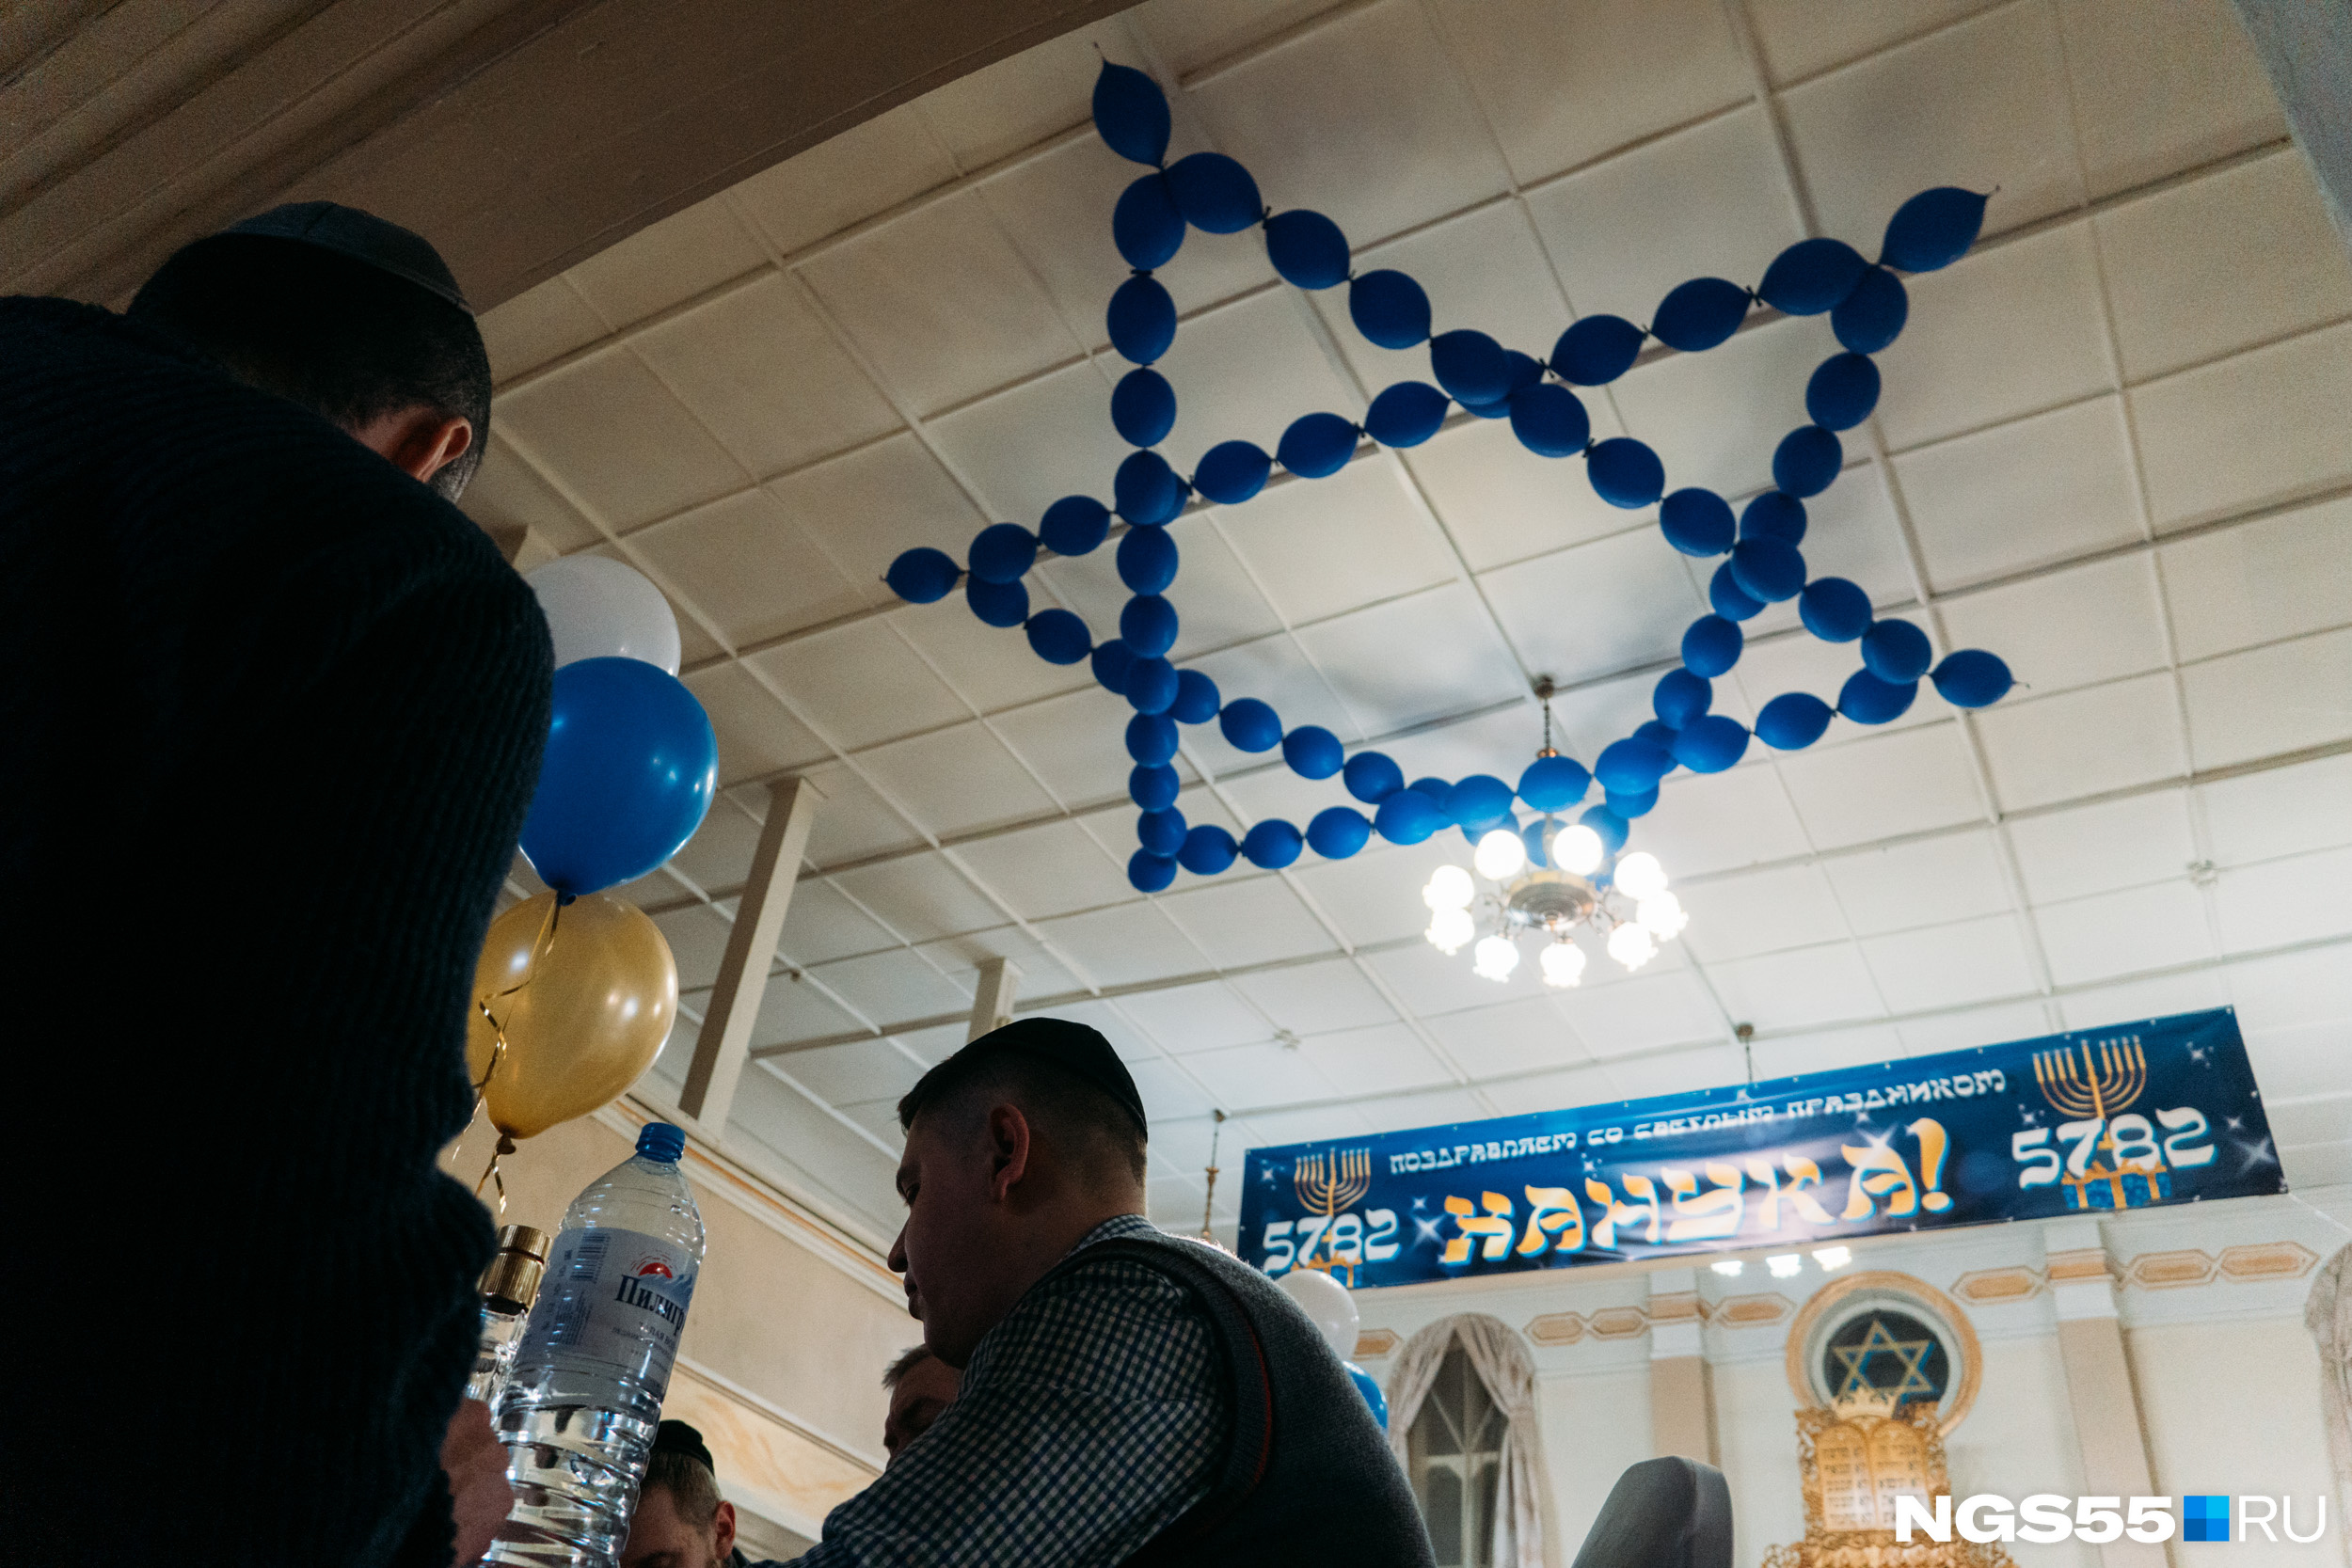 Синагога украшена звездами Давида, в том числе из воздушных шаров